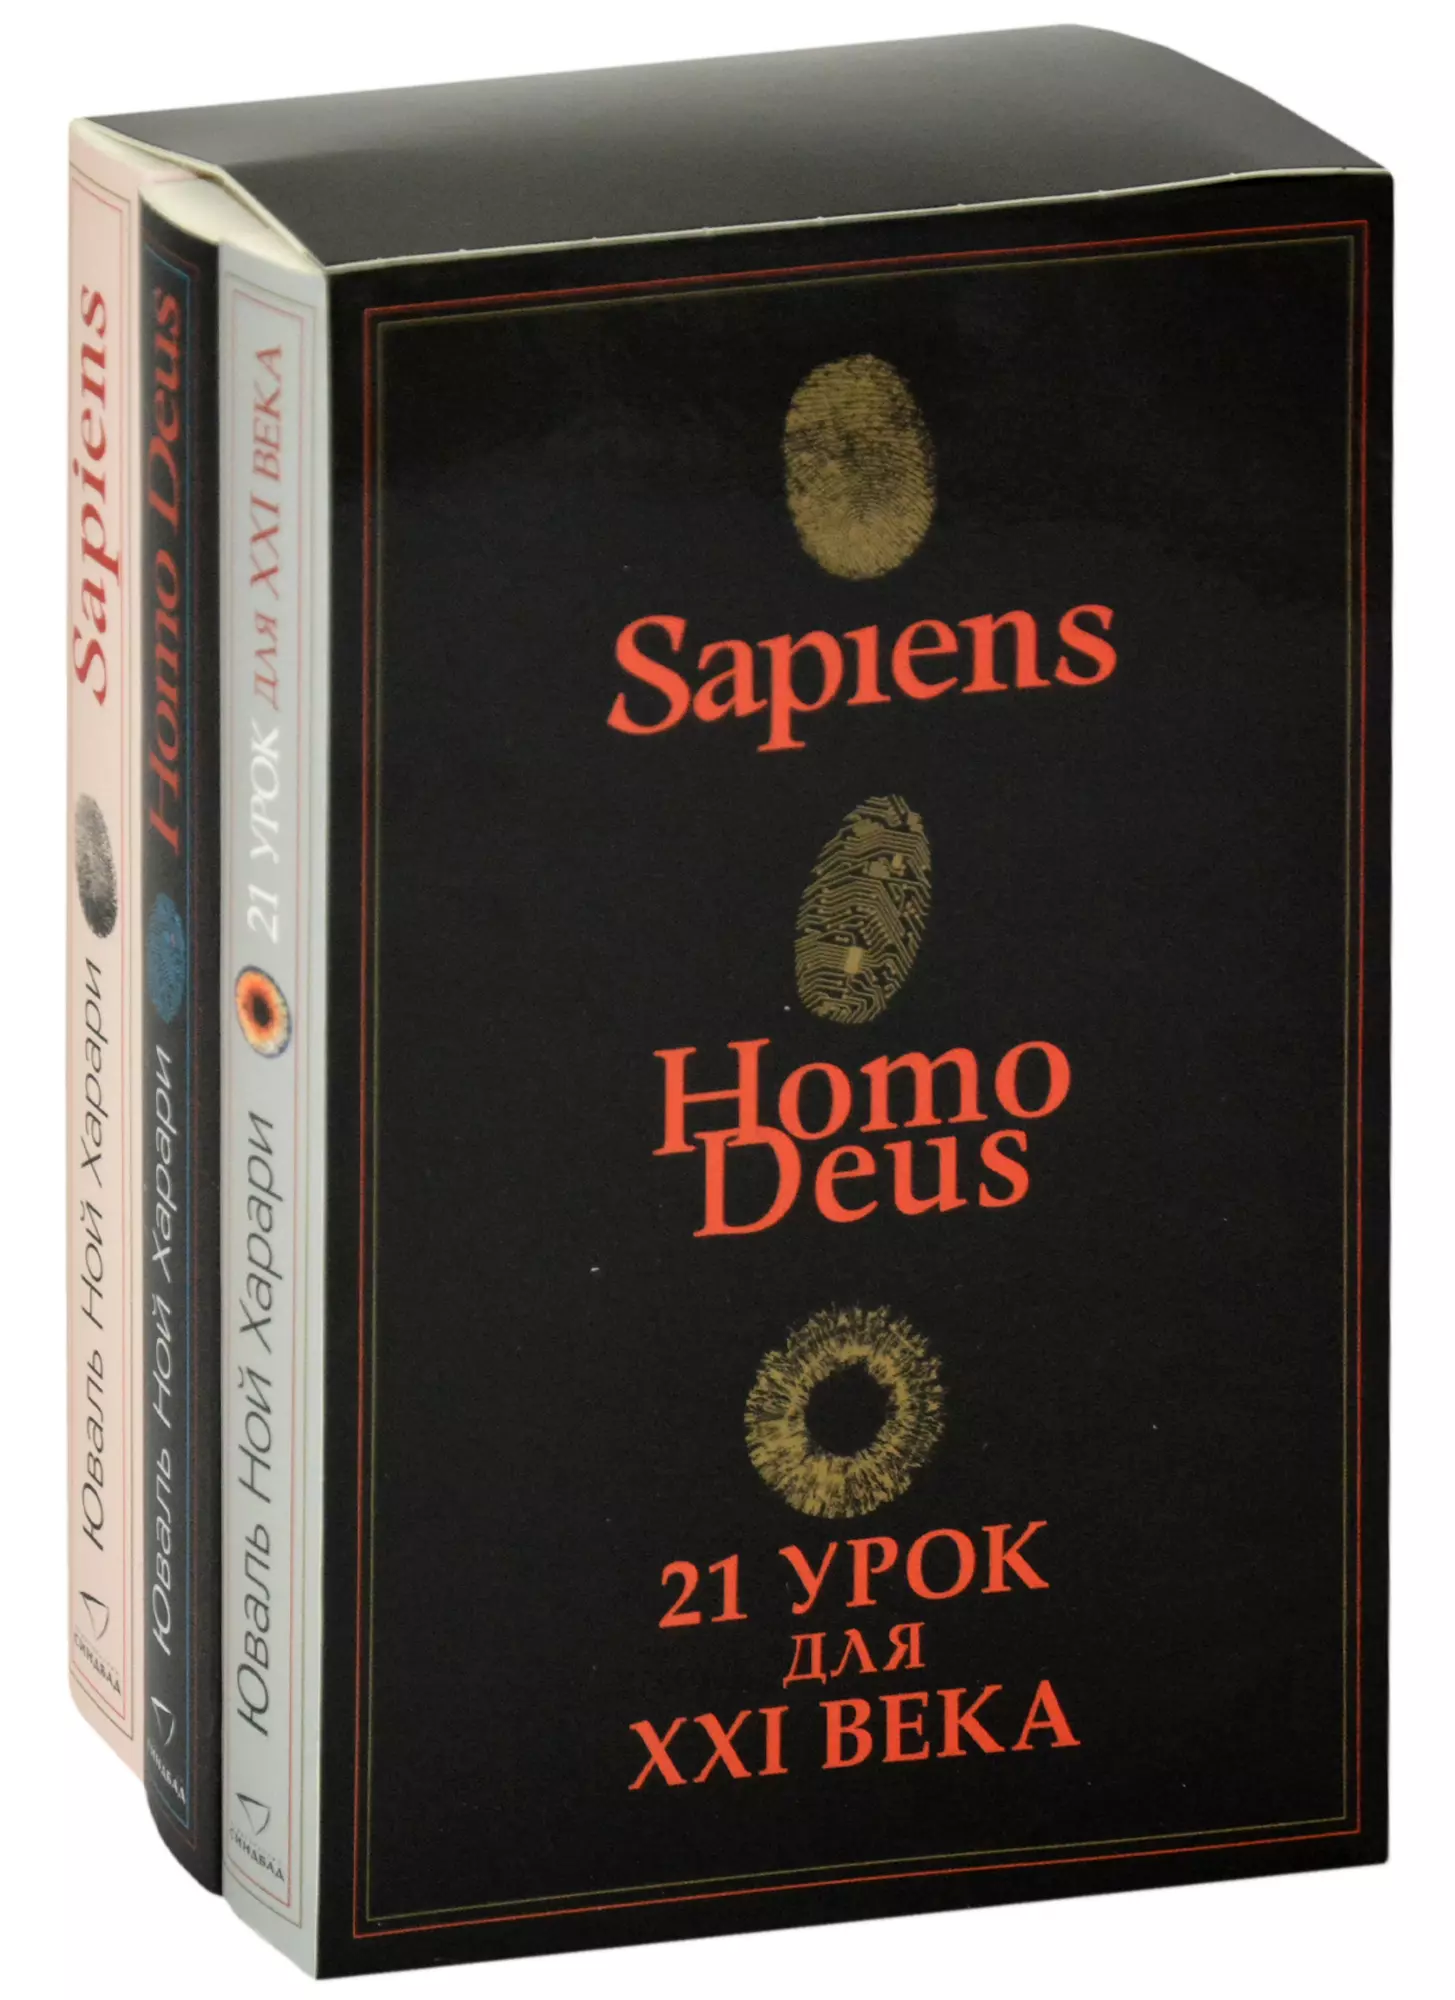 Харари Юваль Ной - Sapiens. Нomo Deus. 21 урок для XXI века (комплект из 3 книг)